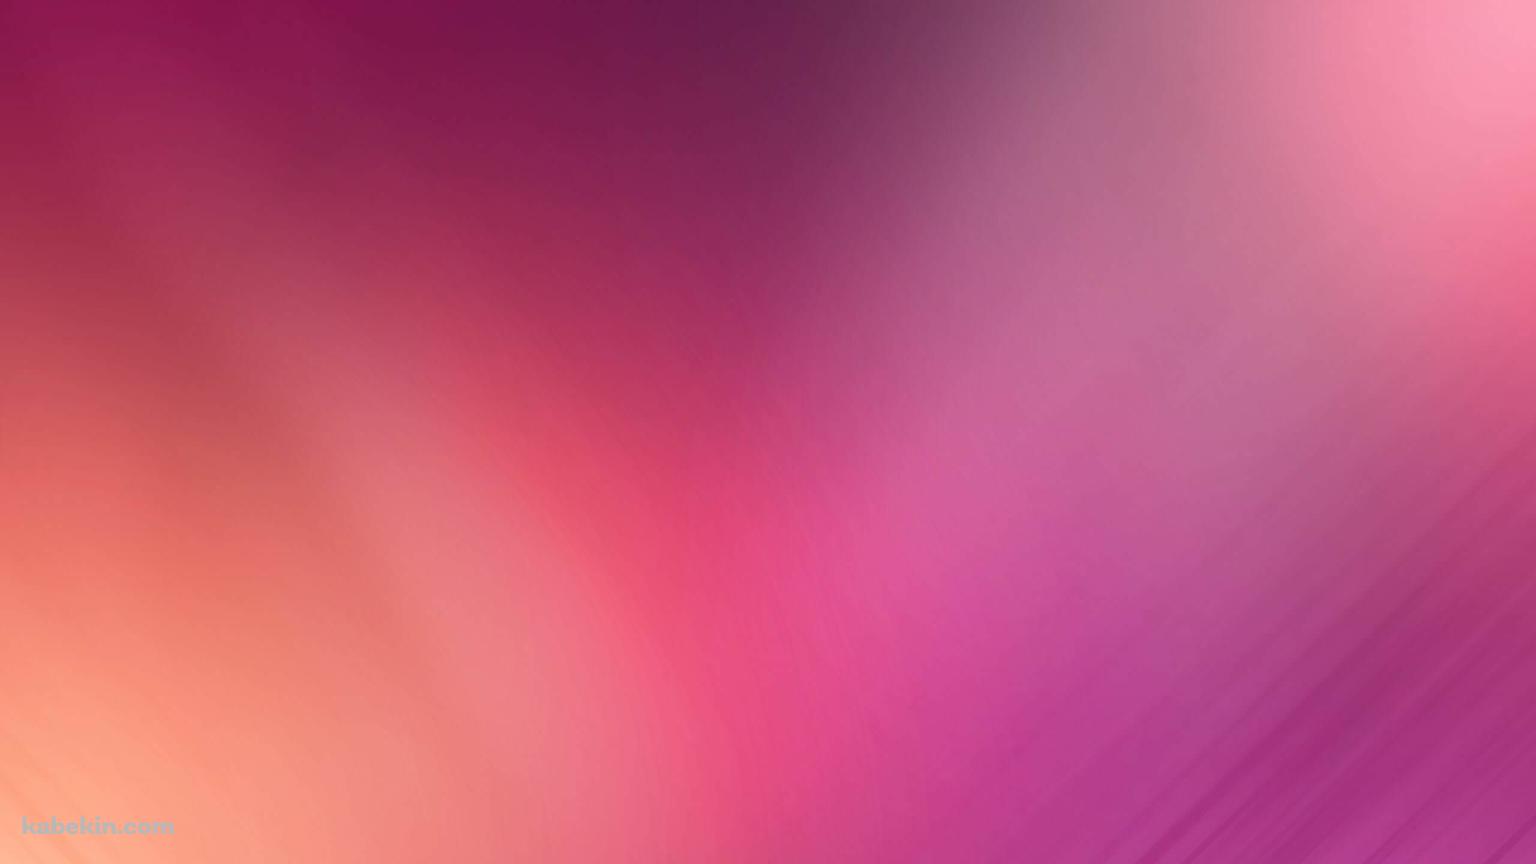 濃淡のあるピンクの壁紙(1536px x 864px) 高画質 PC・デスクトップ用